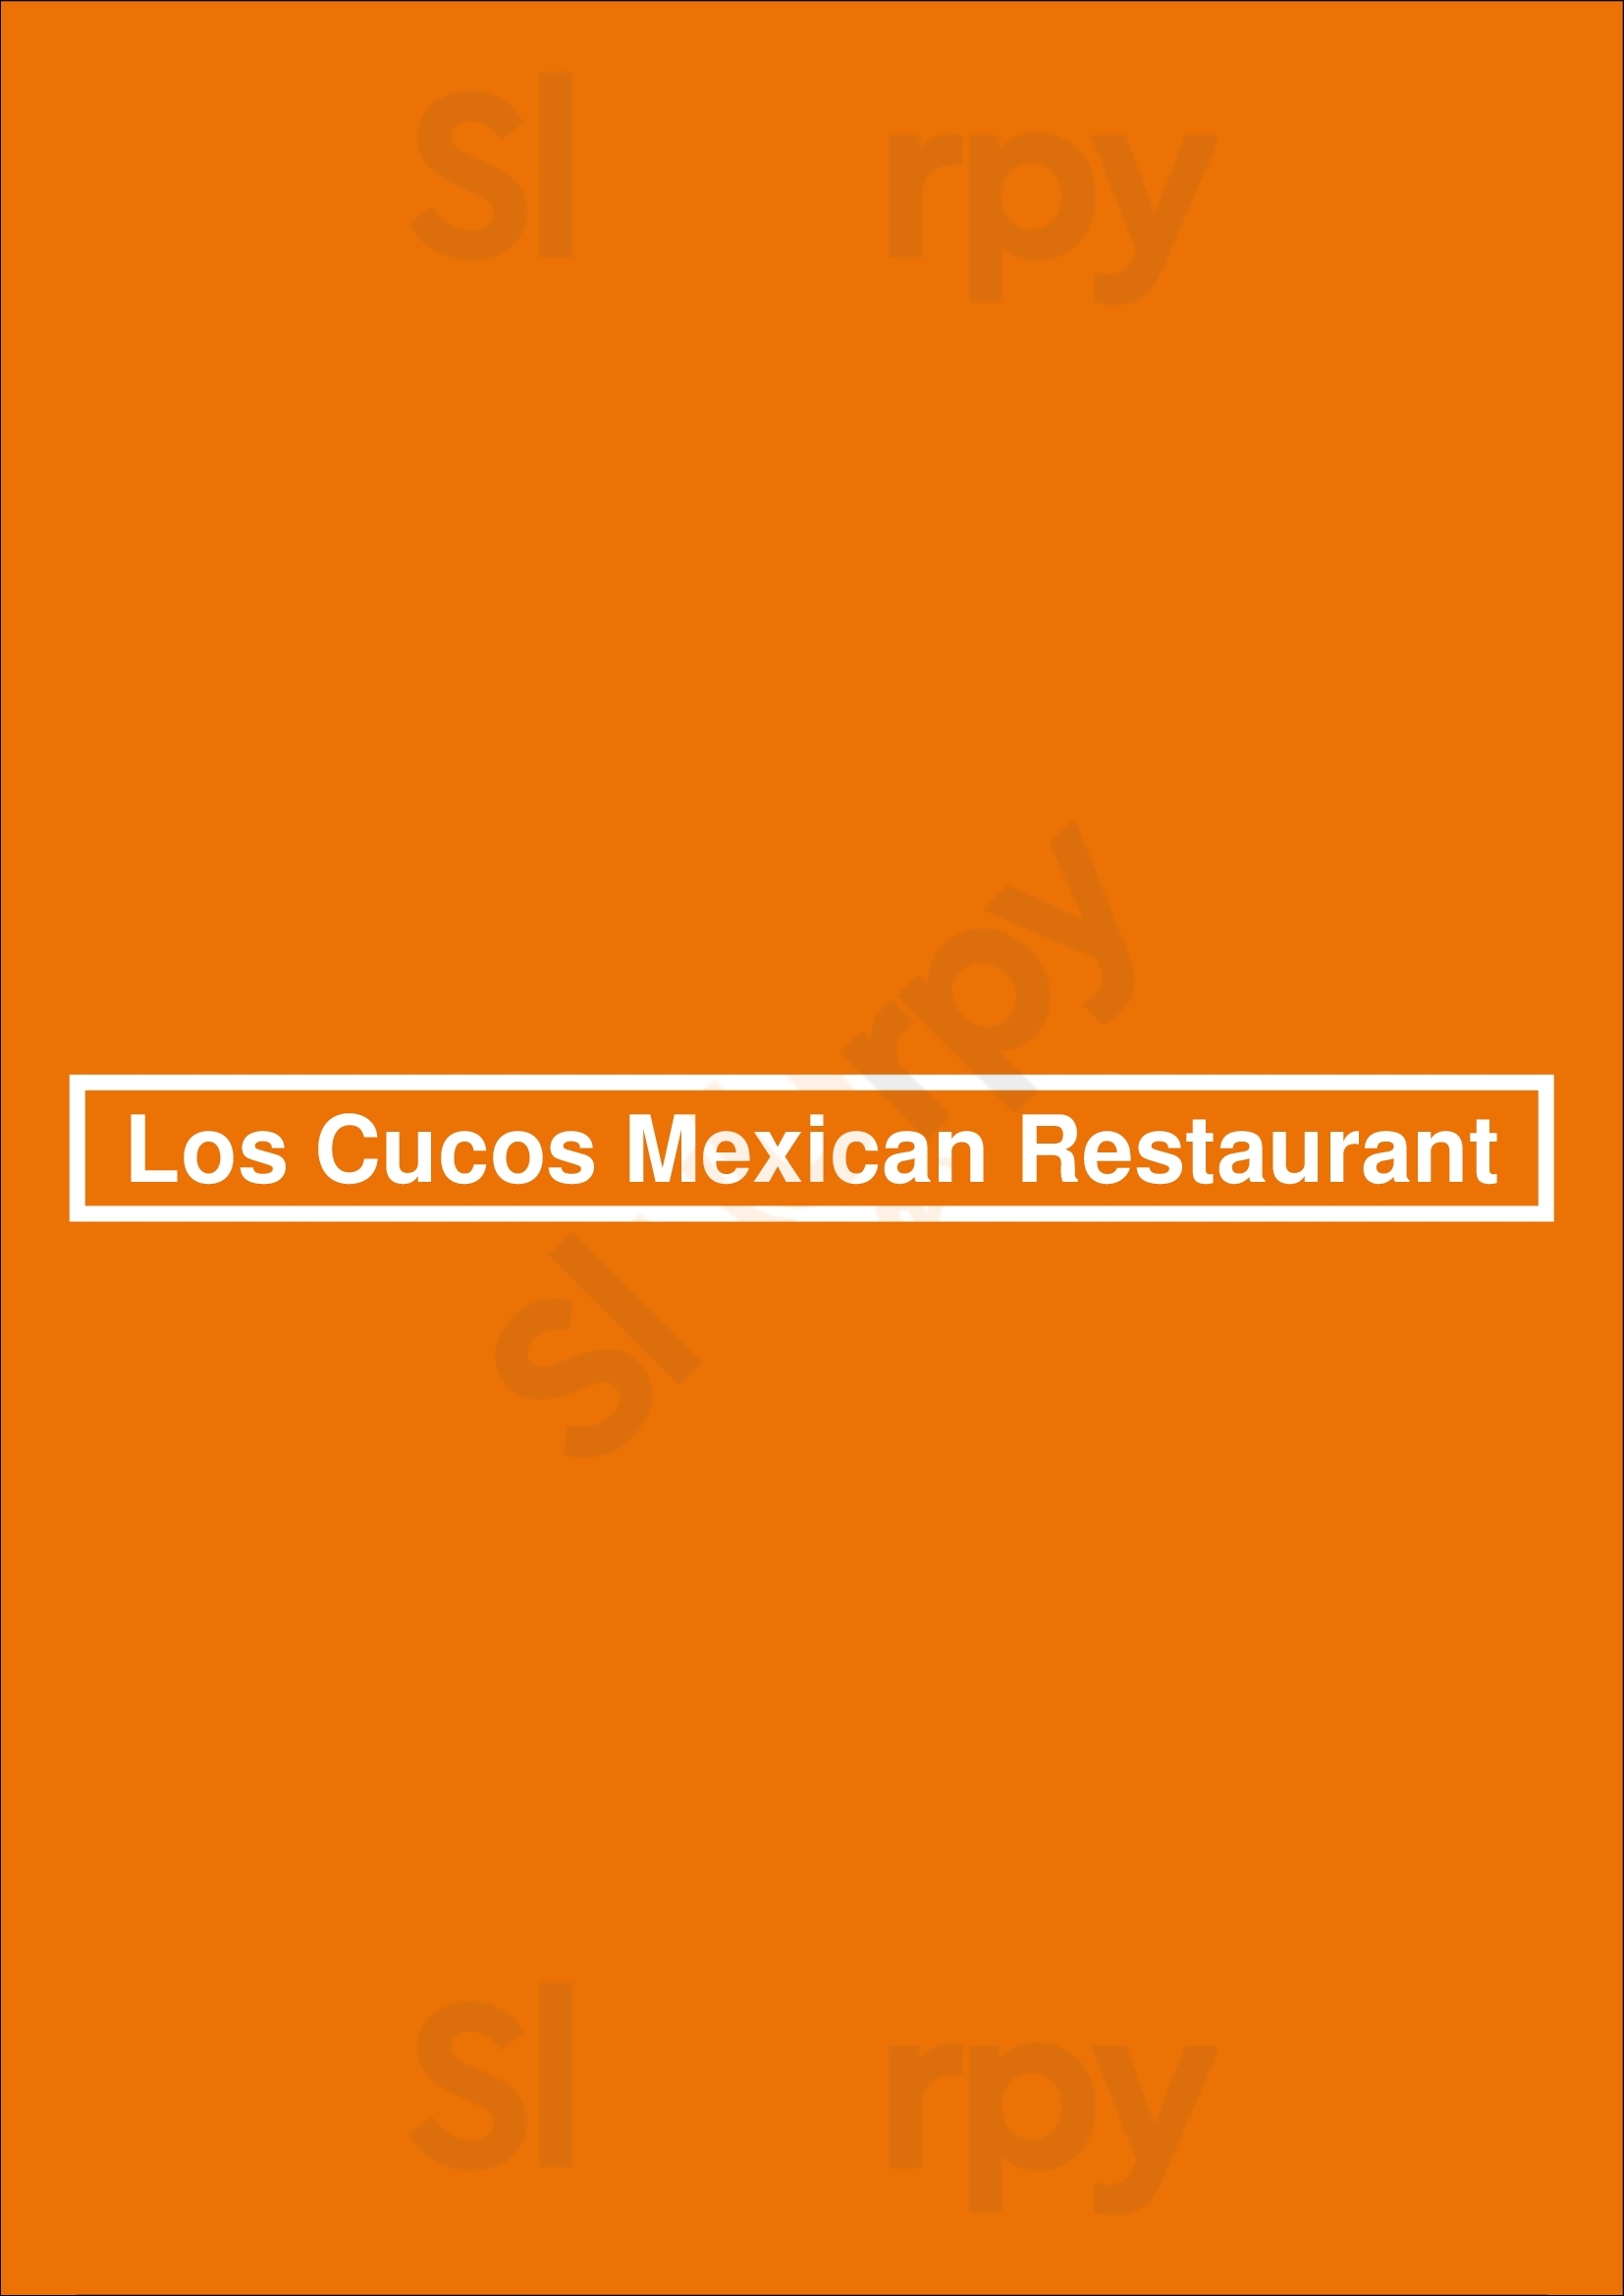 Los Cucos Mexican Restaurant Houston Menu - 1